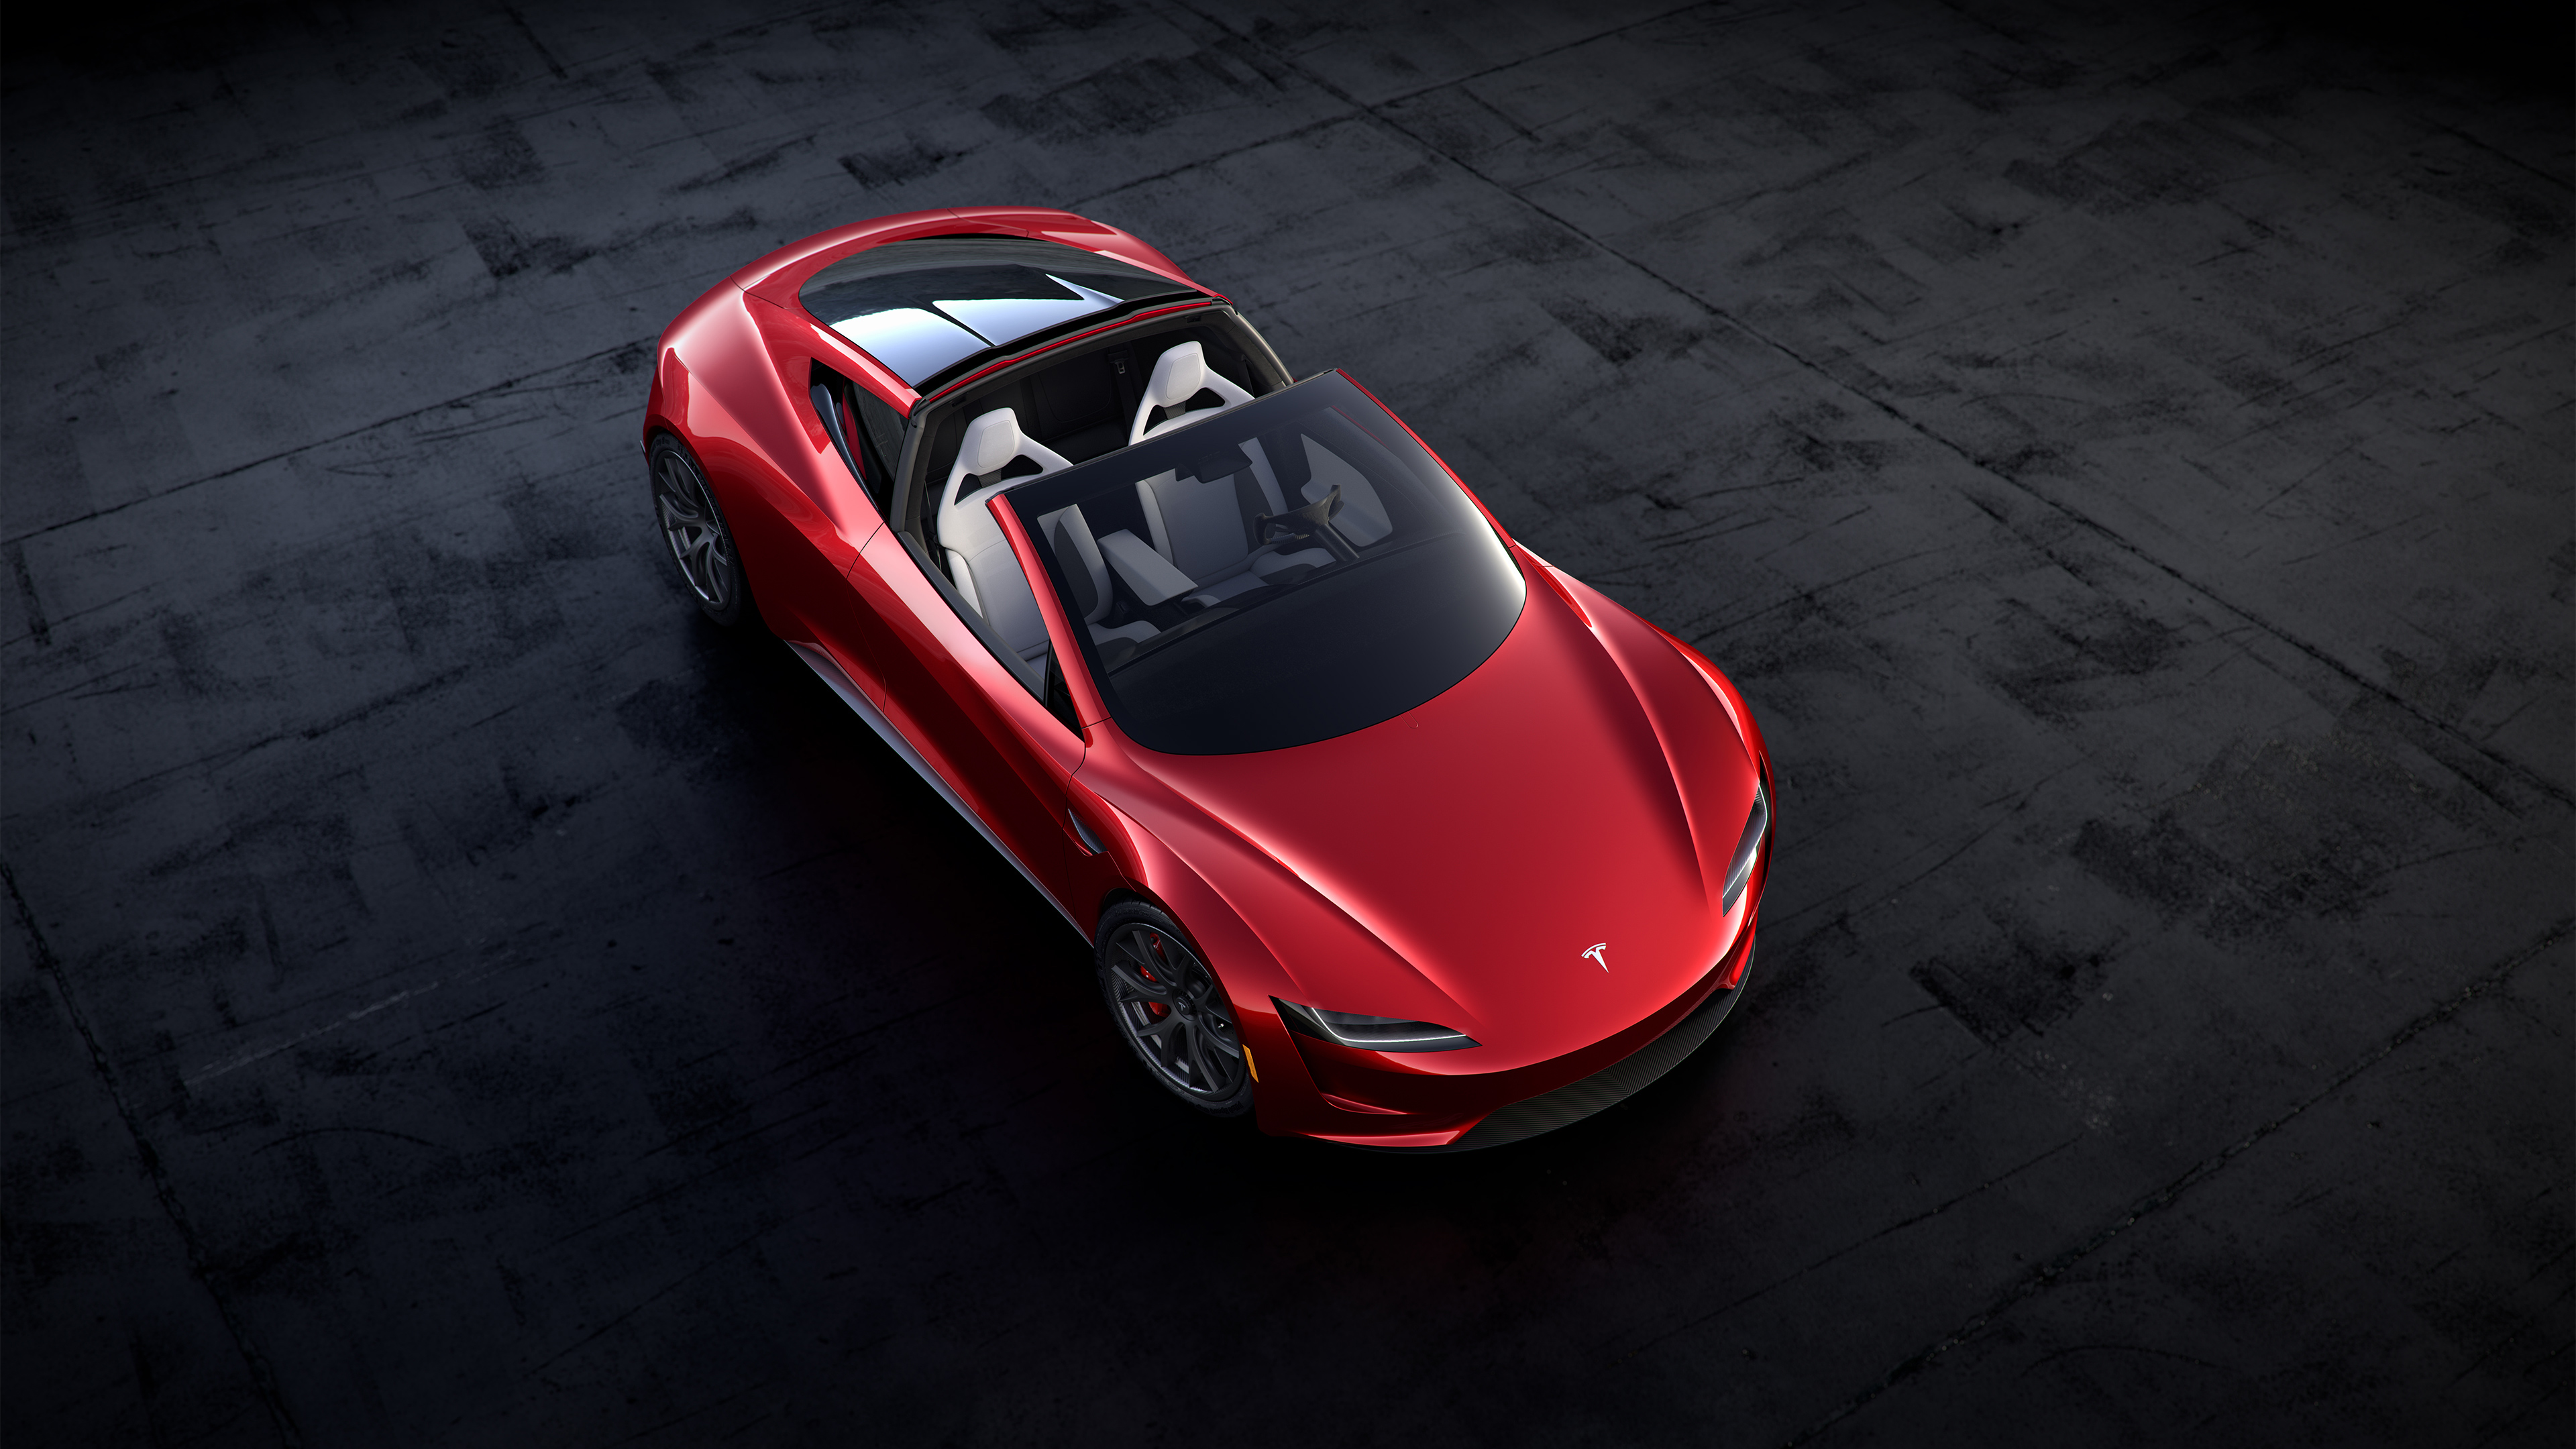 2020 Tesla Roadster 4K Wallpaper HD Car Wallpapers ID 9108